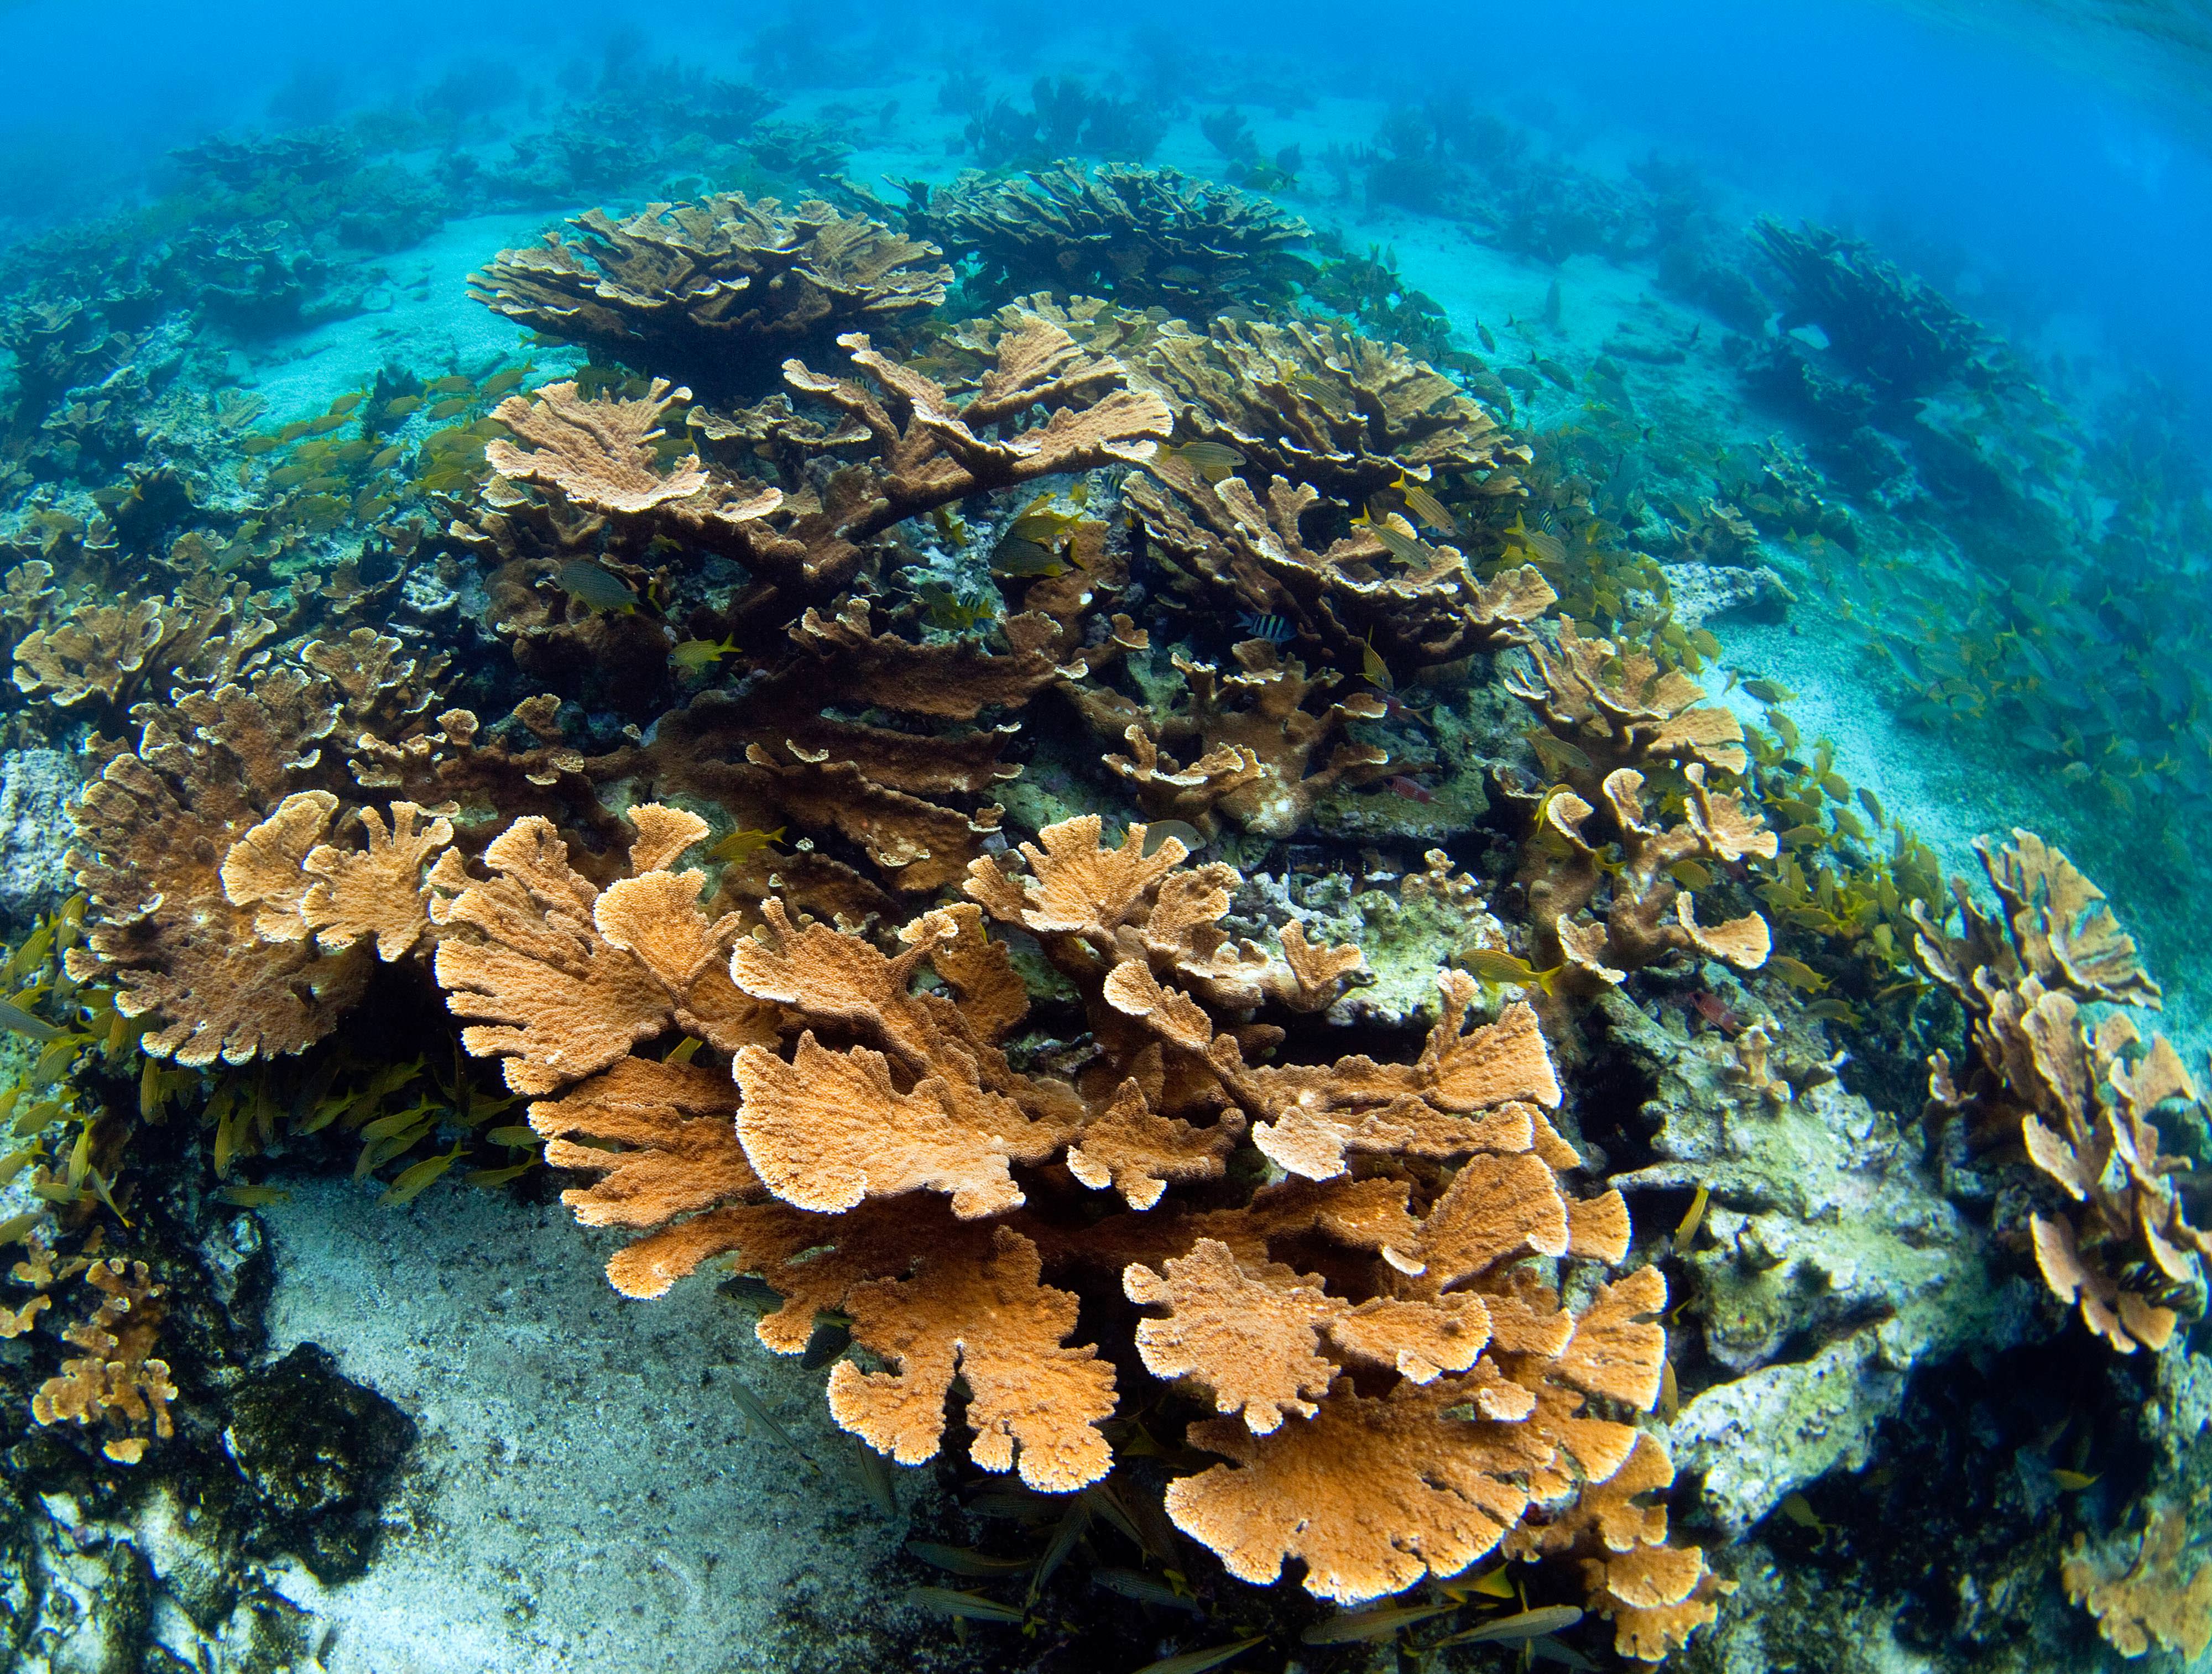 Elkhorn corals in Jardines de la Reina in Cuba